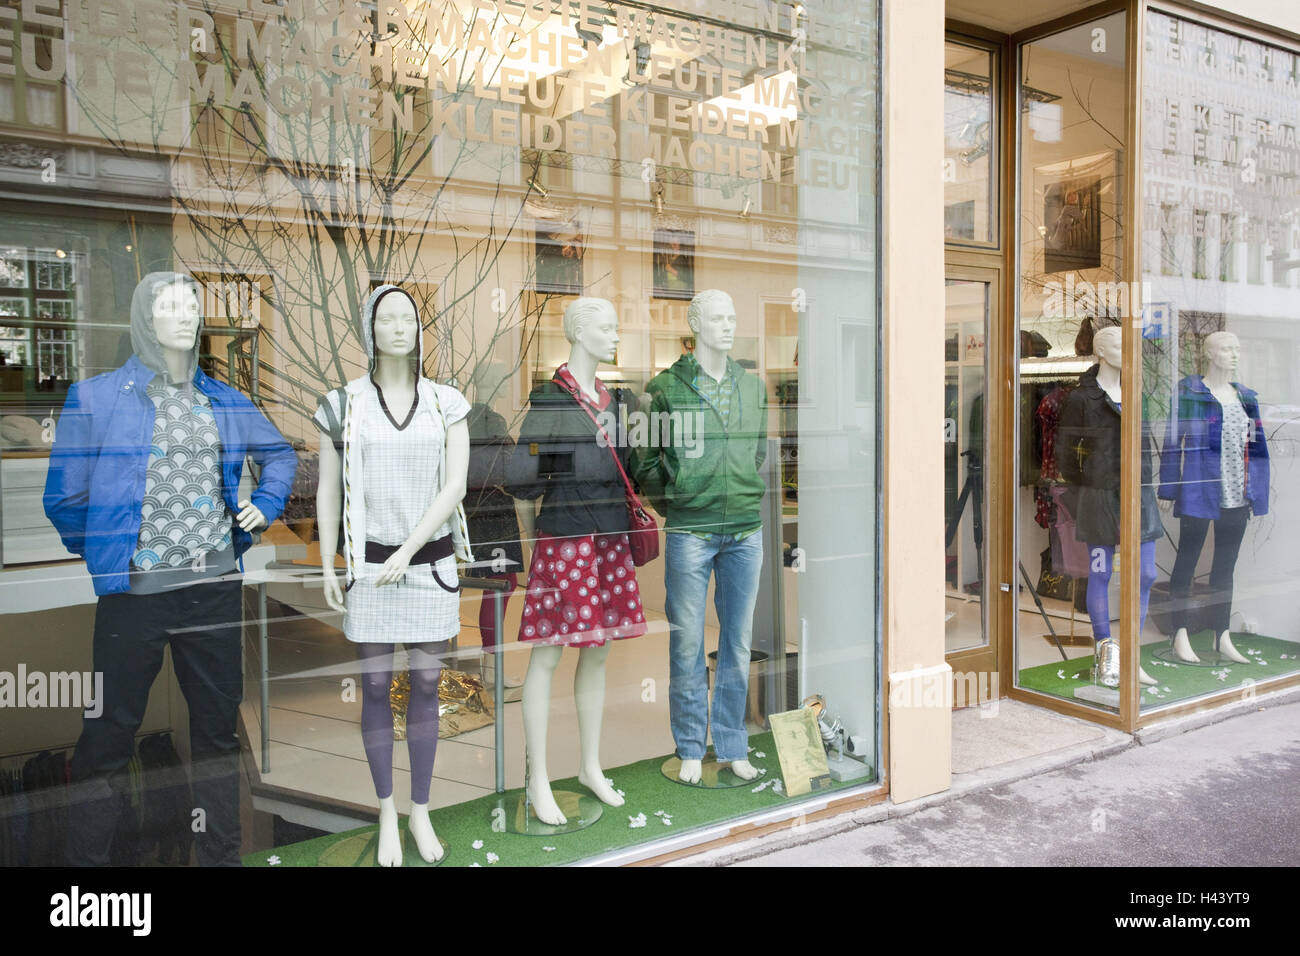 Austria, Upper Austria, Linz, boutique, shop-window, mannequins, Stock Photo